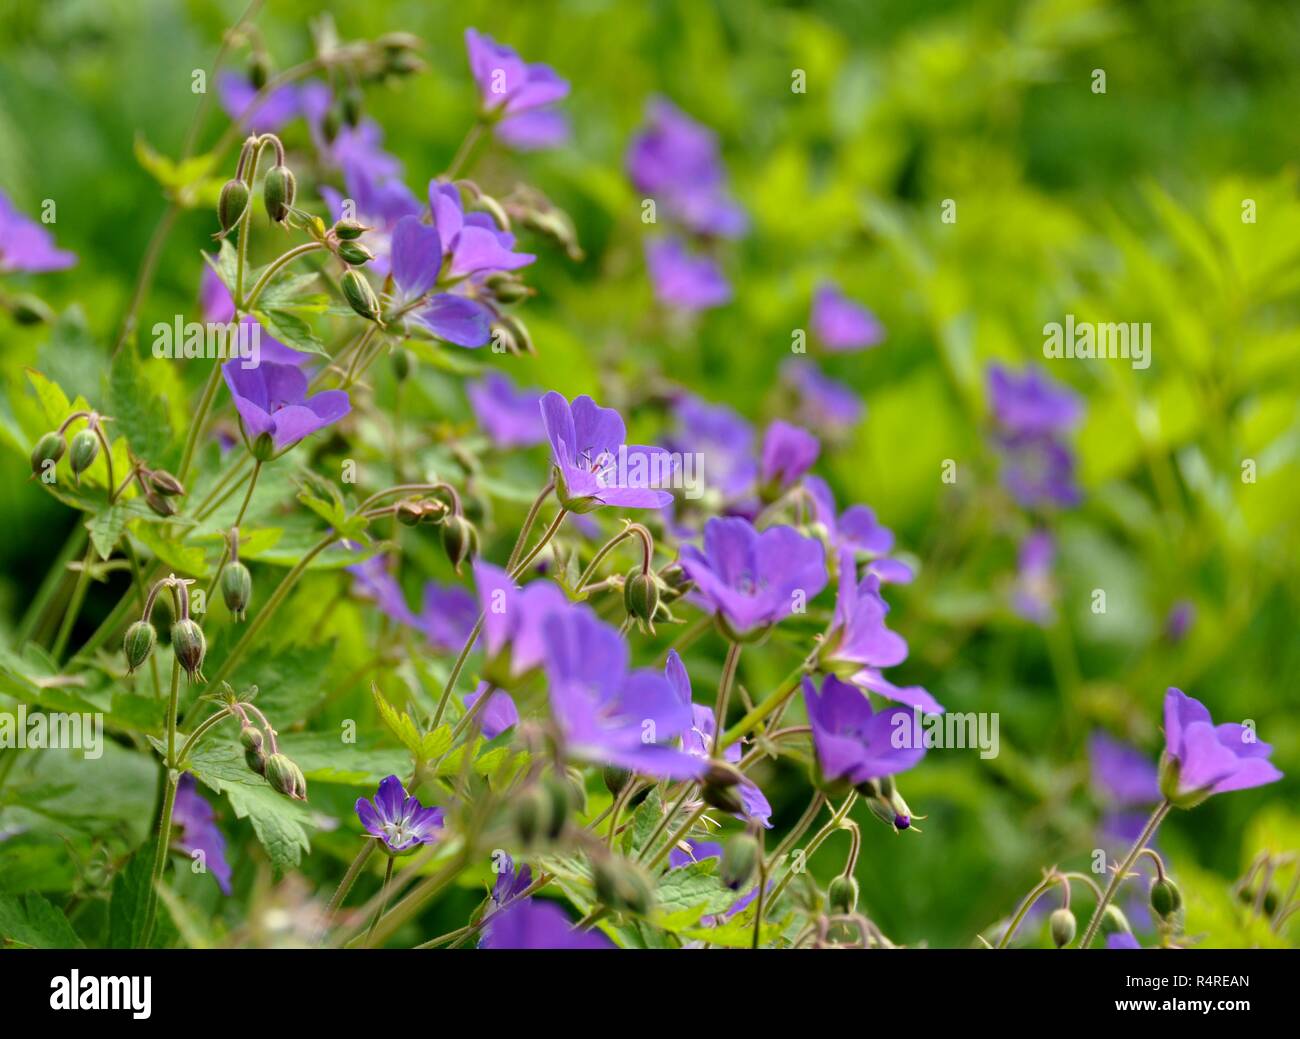 Woodland geranium Geranium sylvaticum flowering Stock Photo